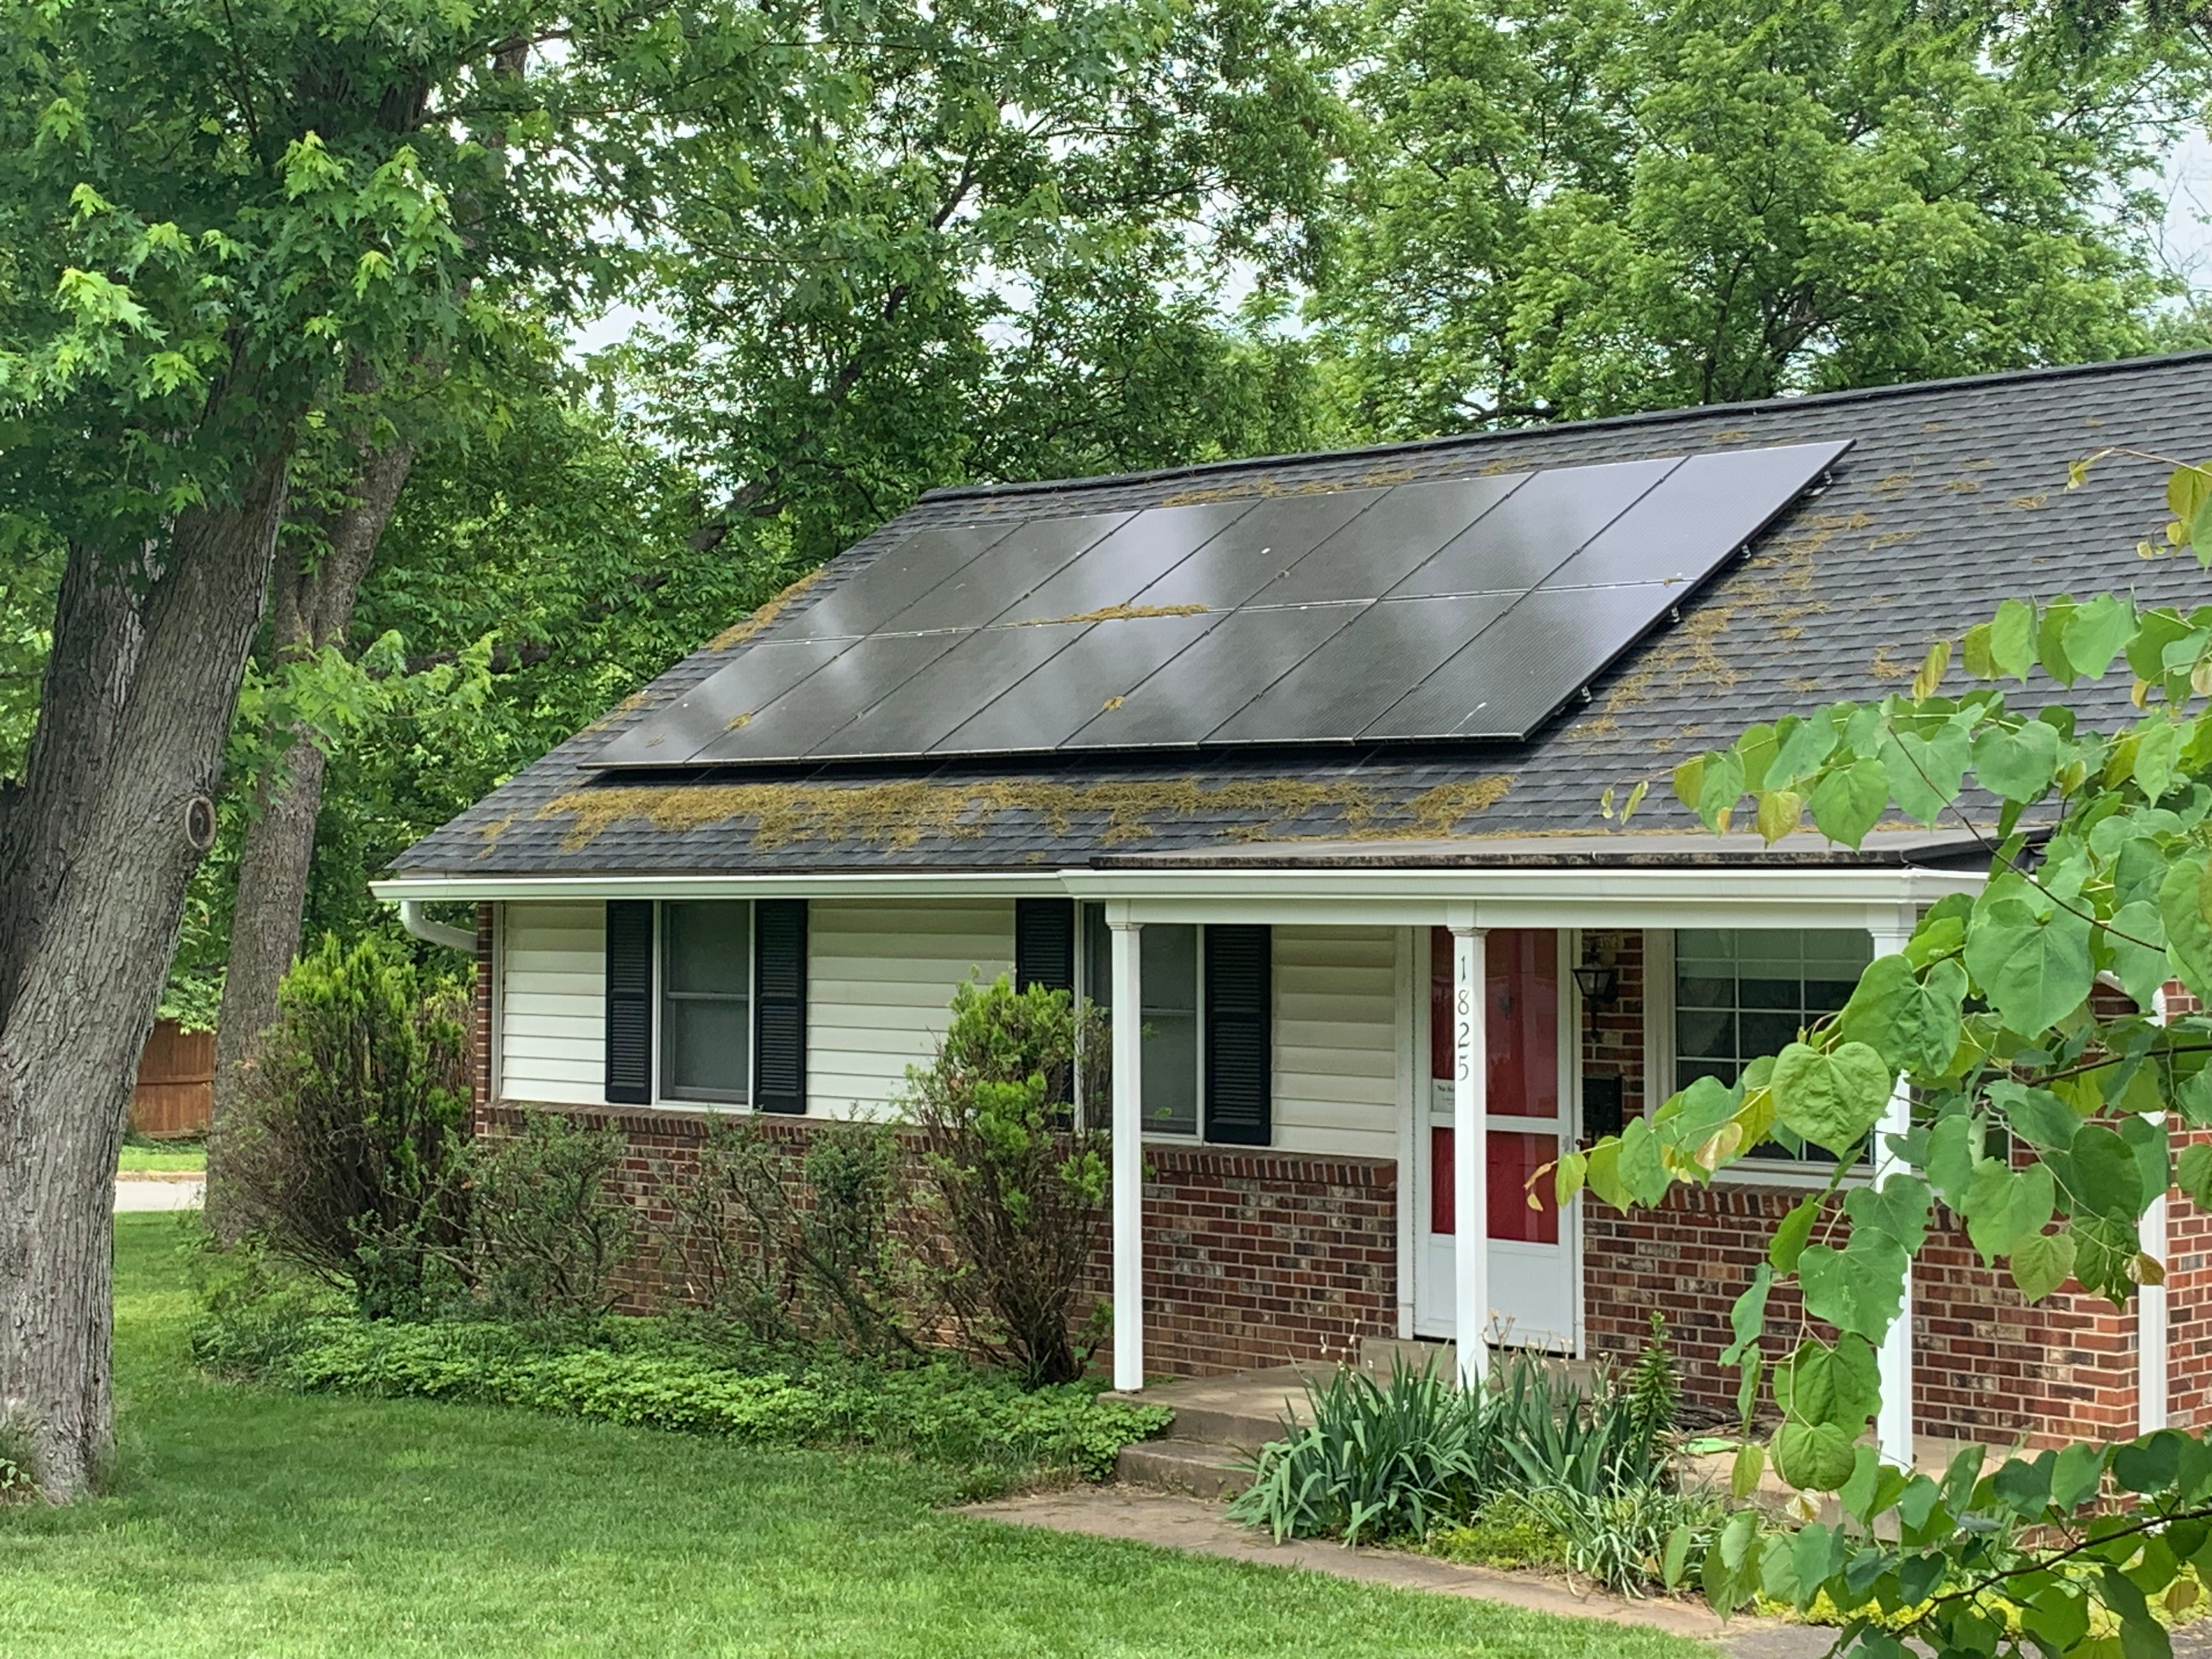 福尔斯彻奇的家庭正在使用太阳能